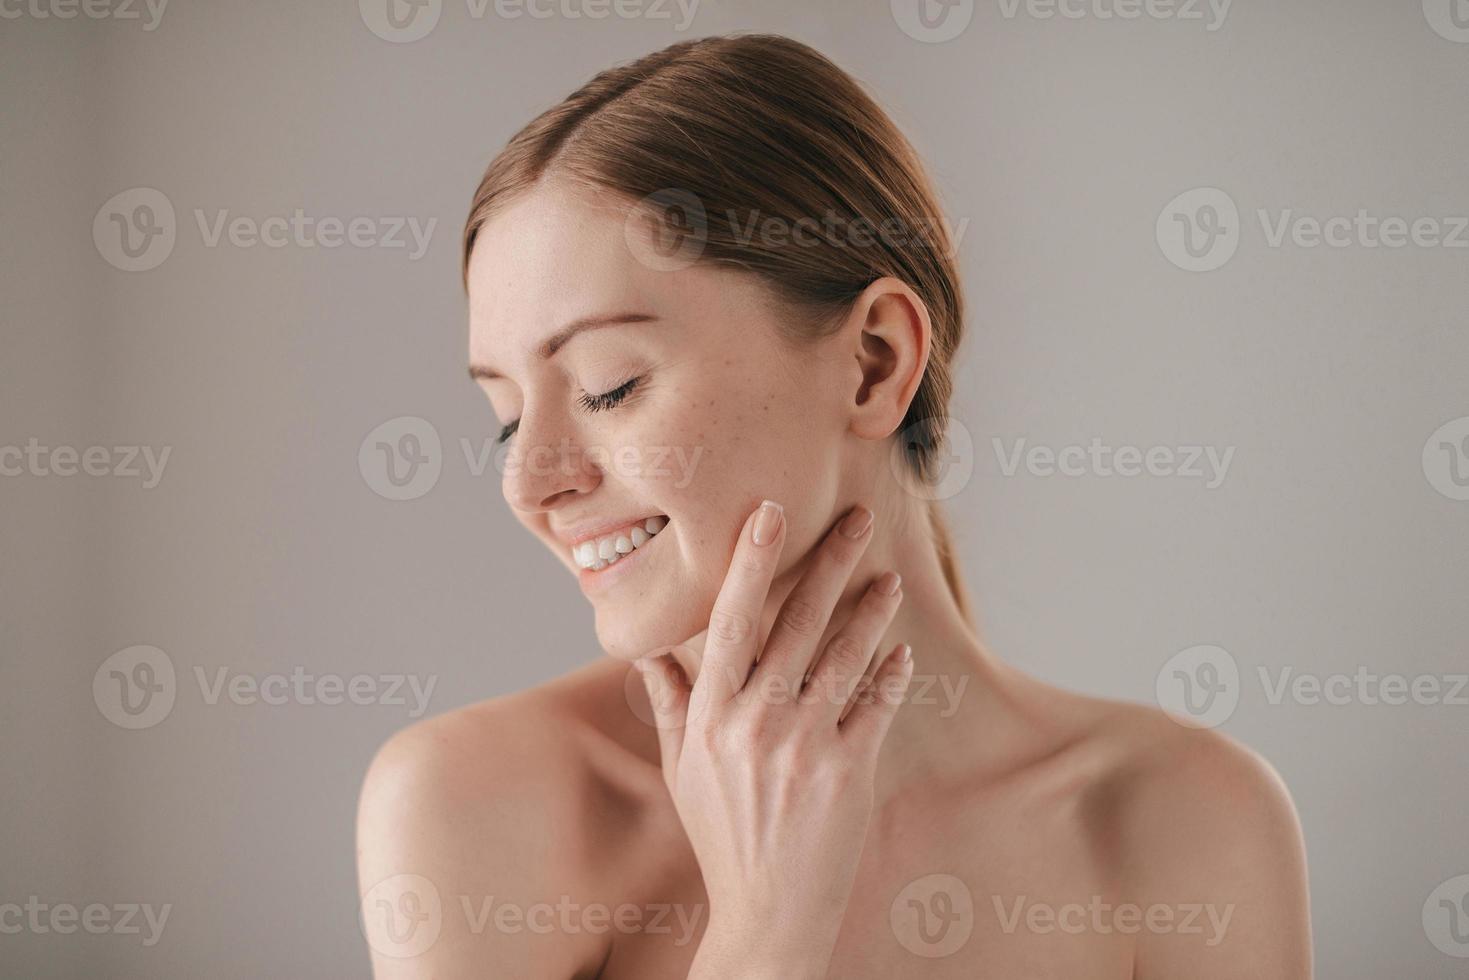 Sensitive Pflege für eine strahlende Haut. Porträt einer rothaarigen Frau mit Sommersprossen, die die Augen geschlossen hält und lächelt, während sie ihr Gesicht berührt und vor grauem Hintergrund steht foto